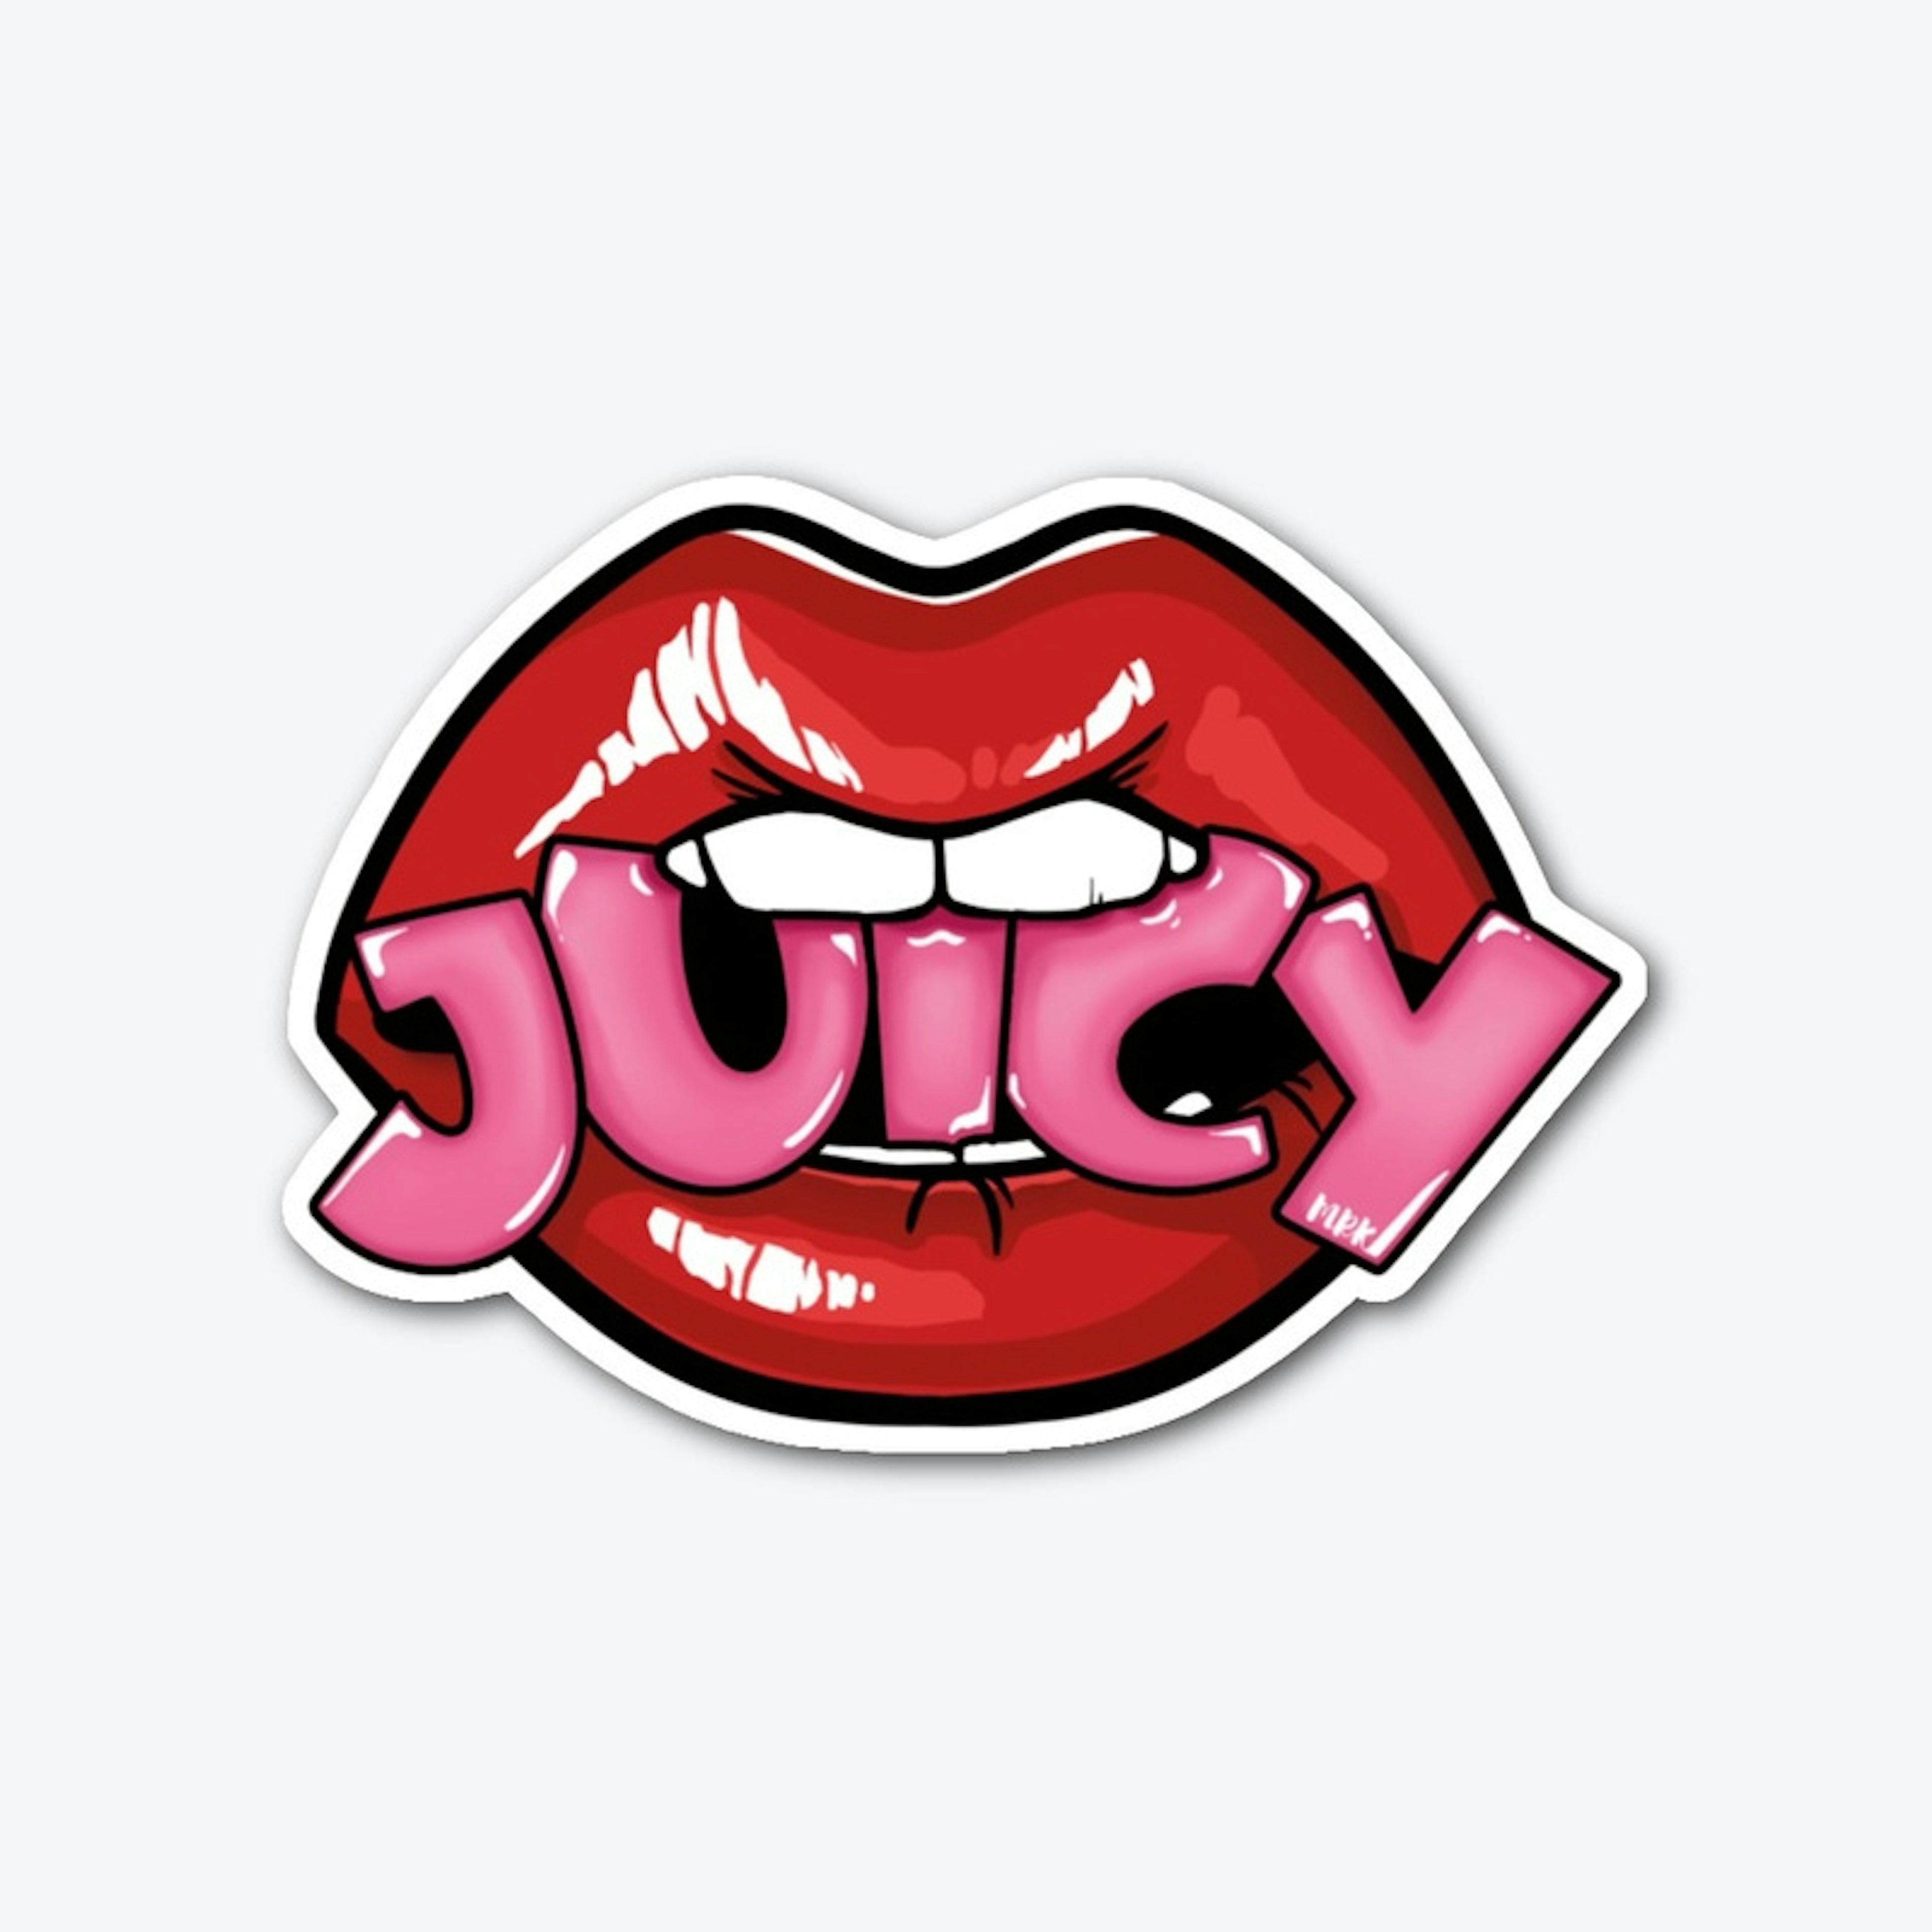 Juicy Lips - Sticker